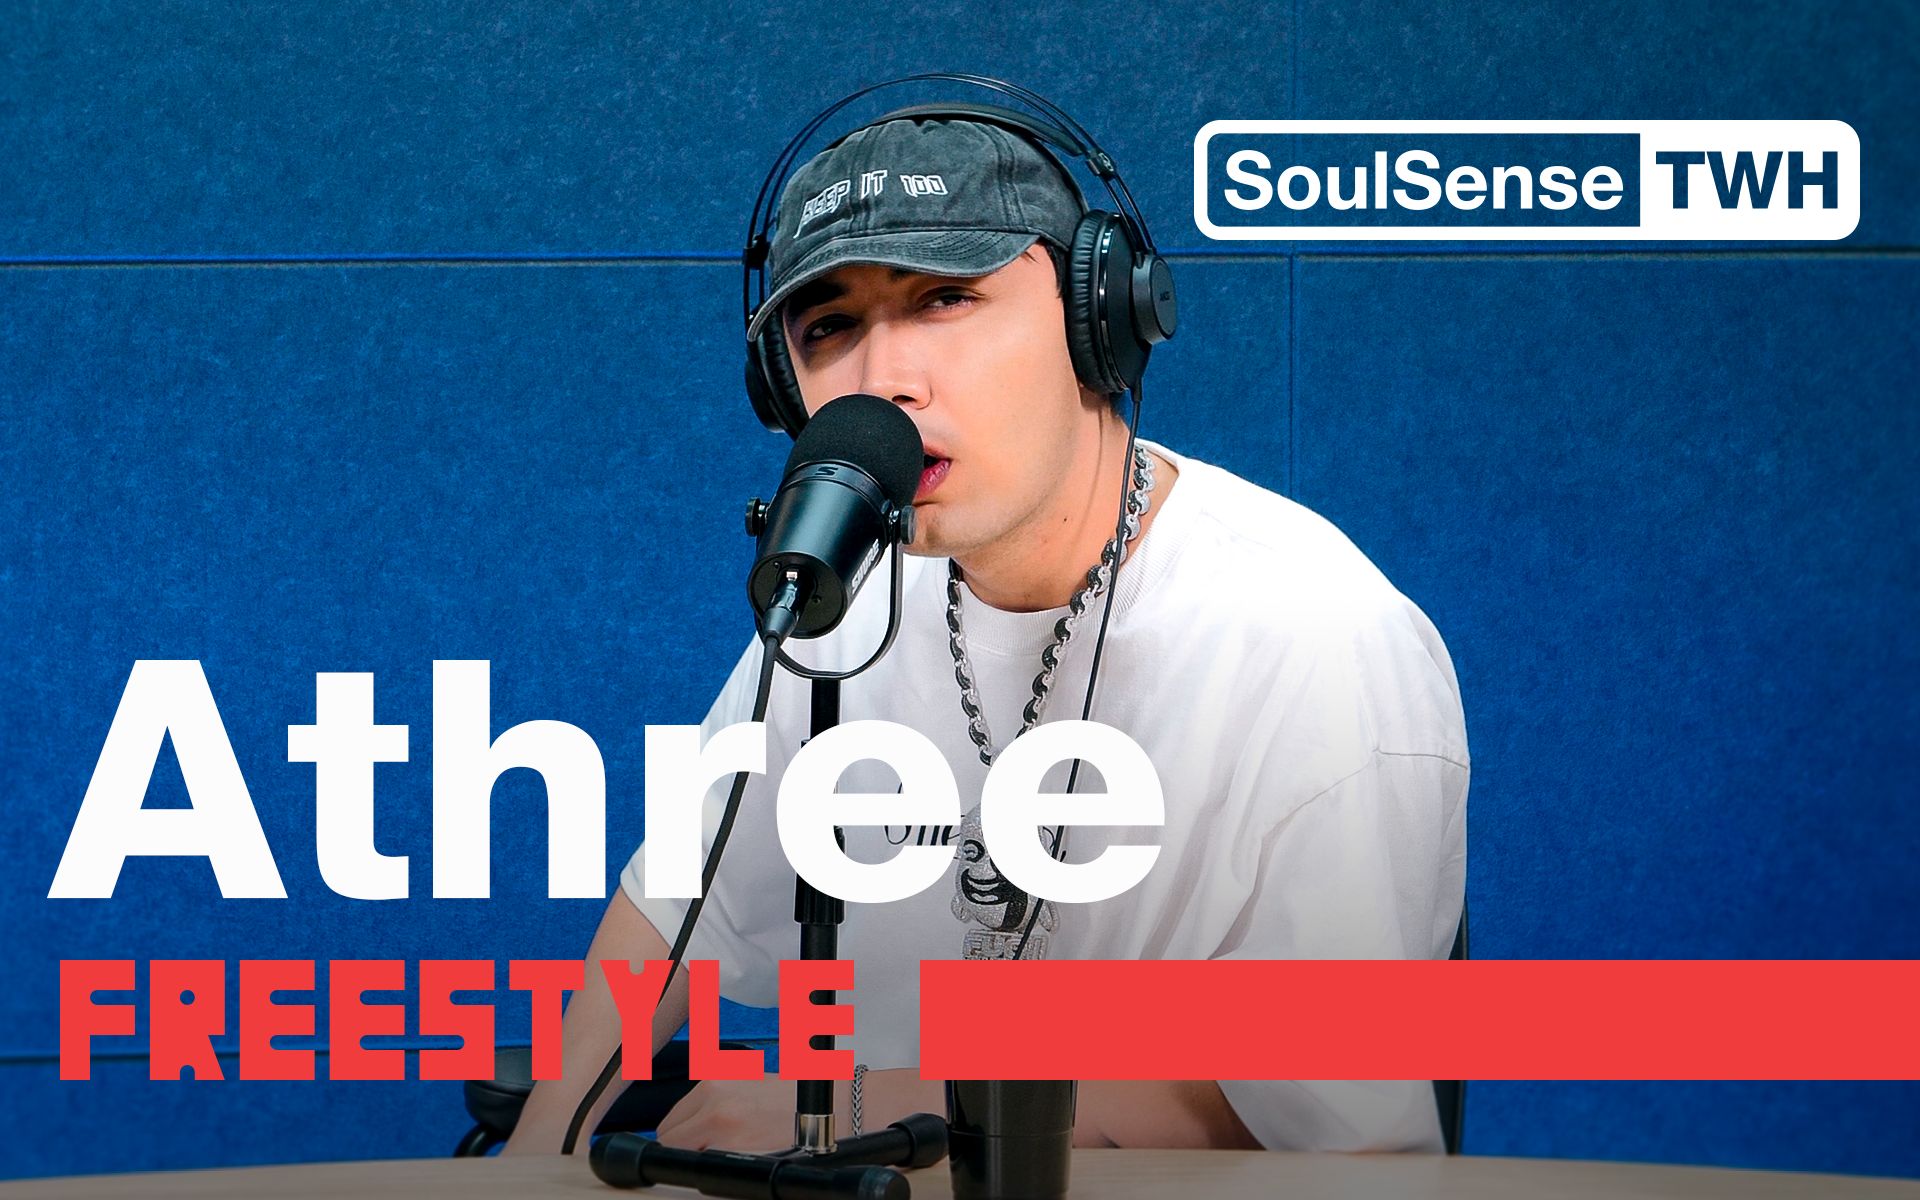 “我的同行不可理喻”“这种HipHop像个喜剧”AThree新专现场表演《恨与爱》|SoulSense TWH-Freestyle